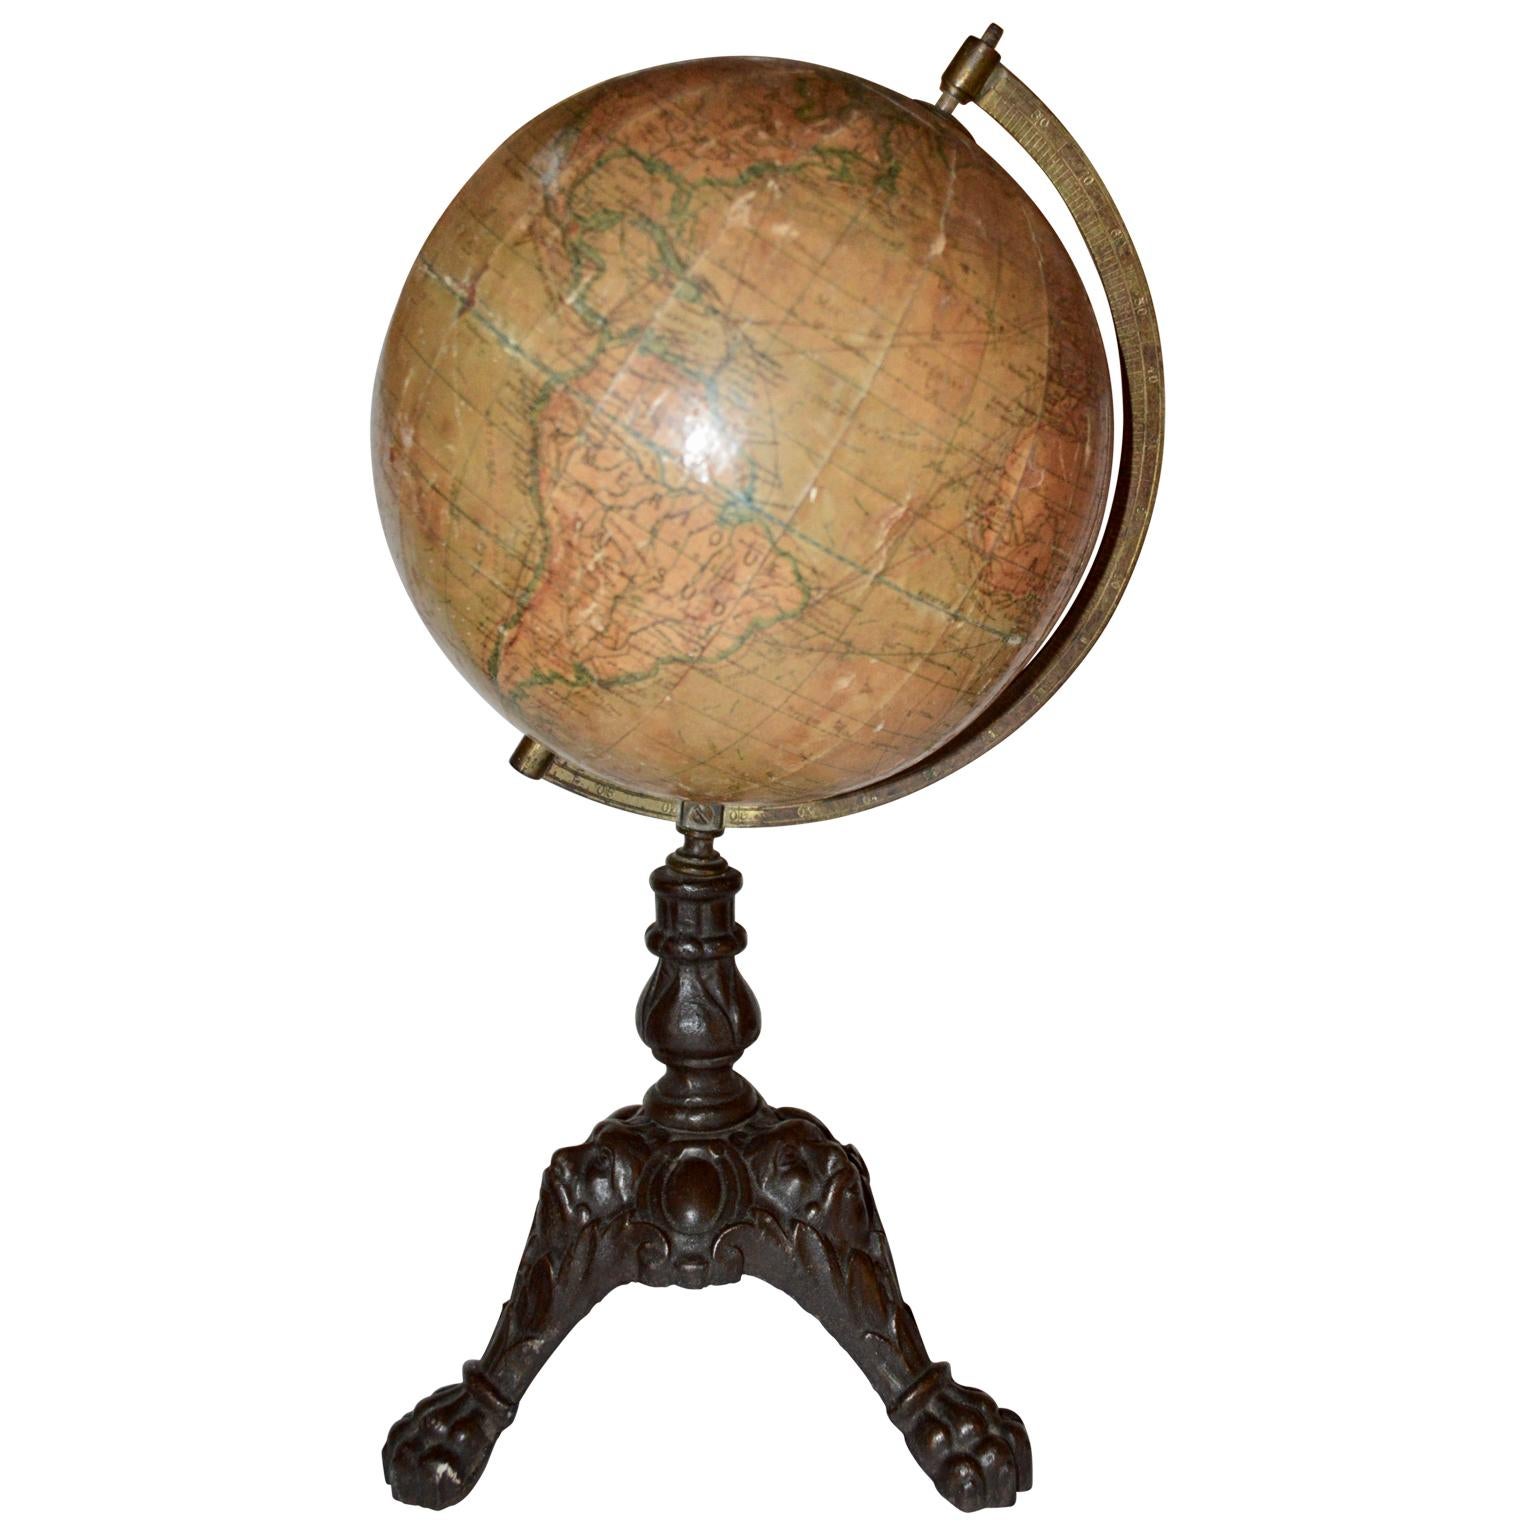 French Papier-Mâché Terrestial Globe by J. Lebeque et Cie